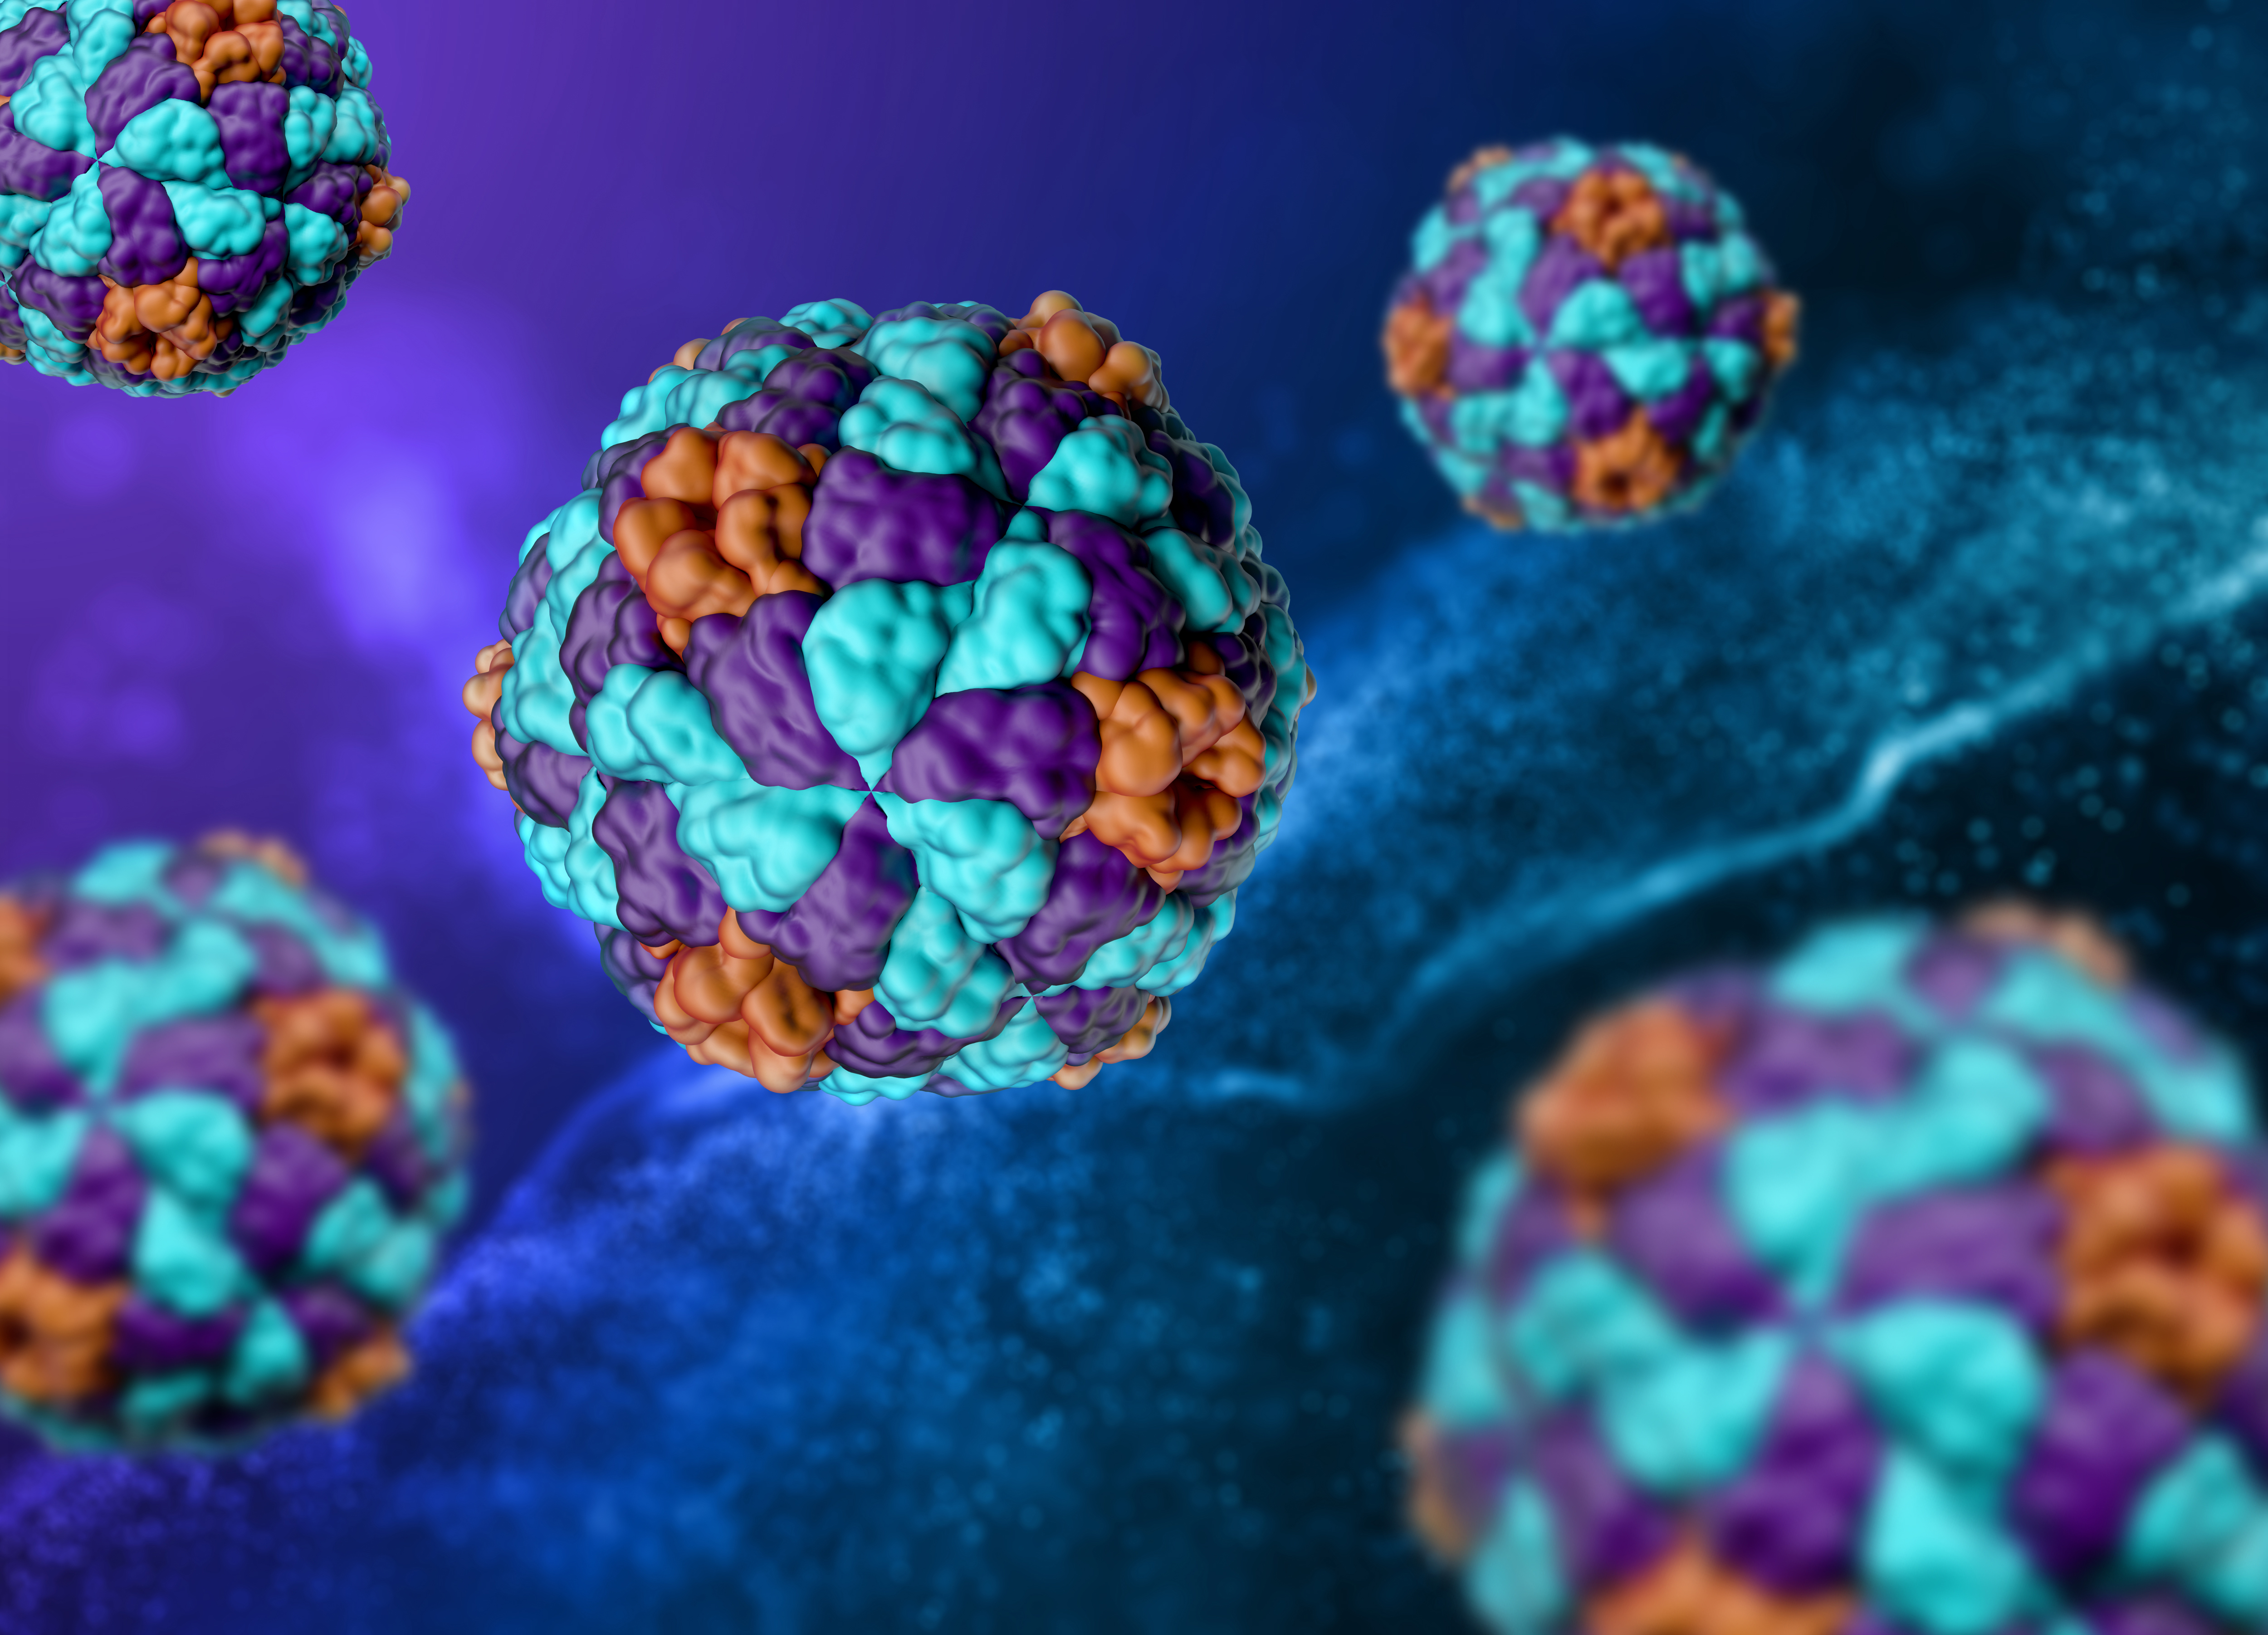 간염 바이러스를 3D로 입체적으로 형상화해서 확대를 해 놓은 사진